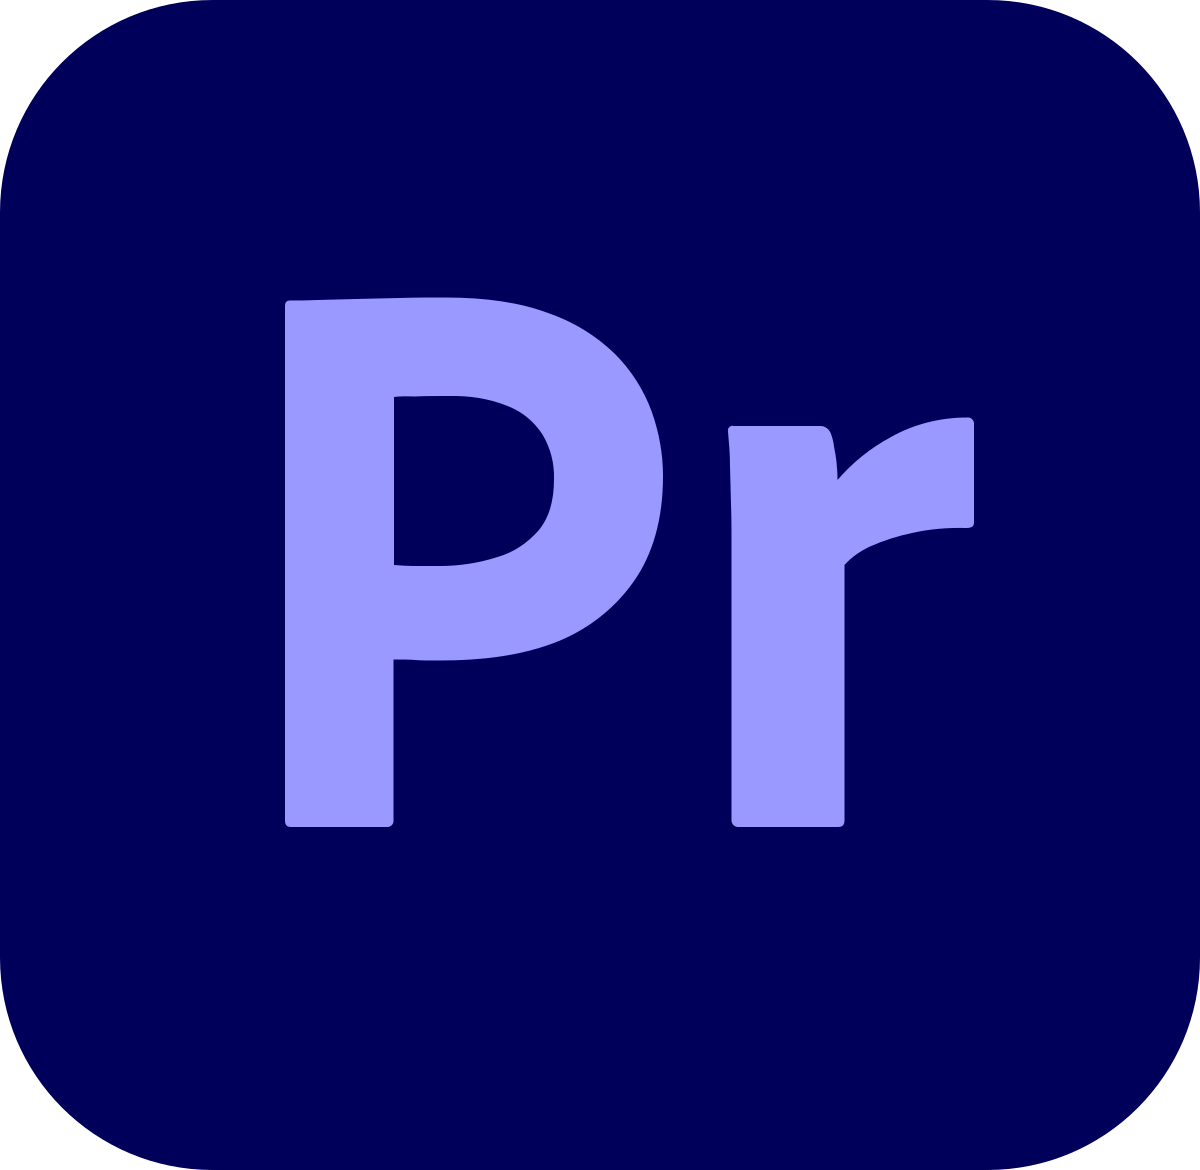 Premiere pro software download 42re rebuild pdf free download